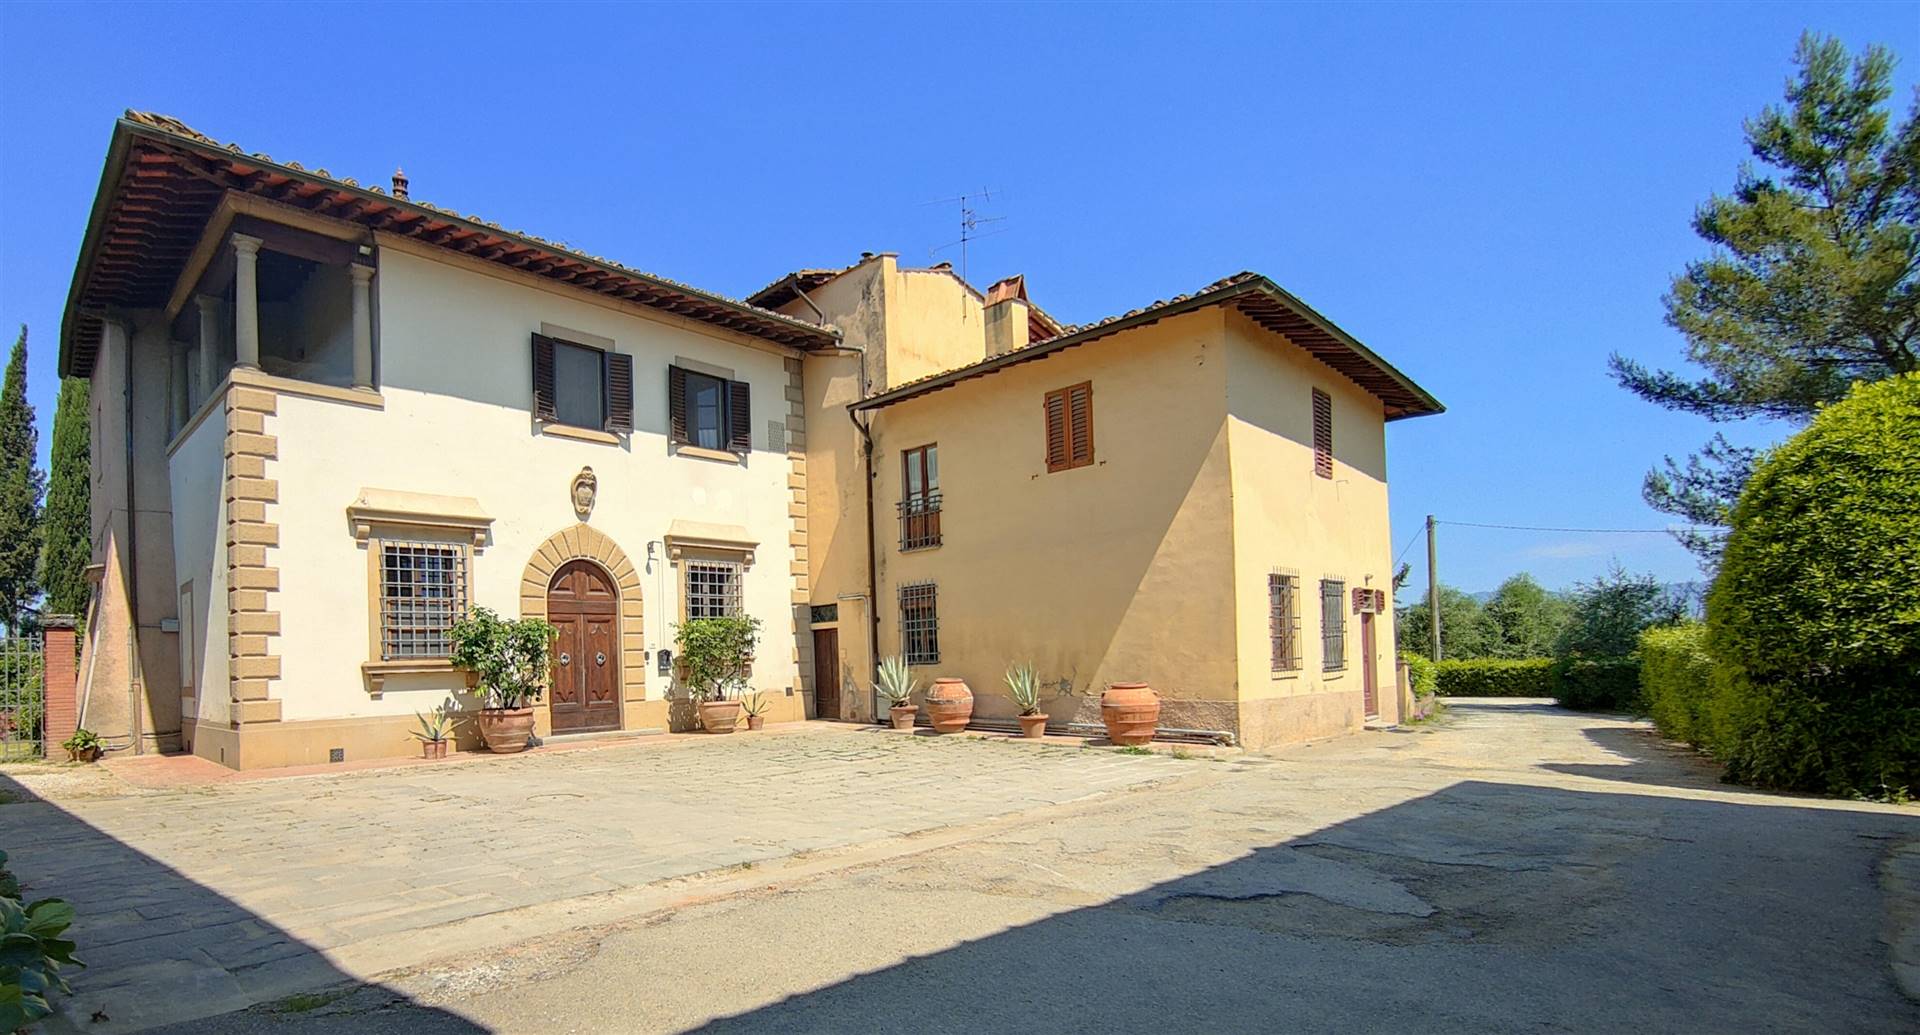 Villa in vendita a Scandicci, 30 locali, zona iano, Trattative riservate | PortaleAgenzieImmobiliari.it